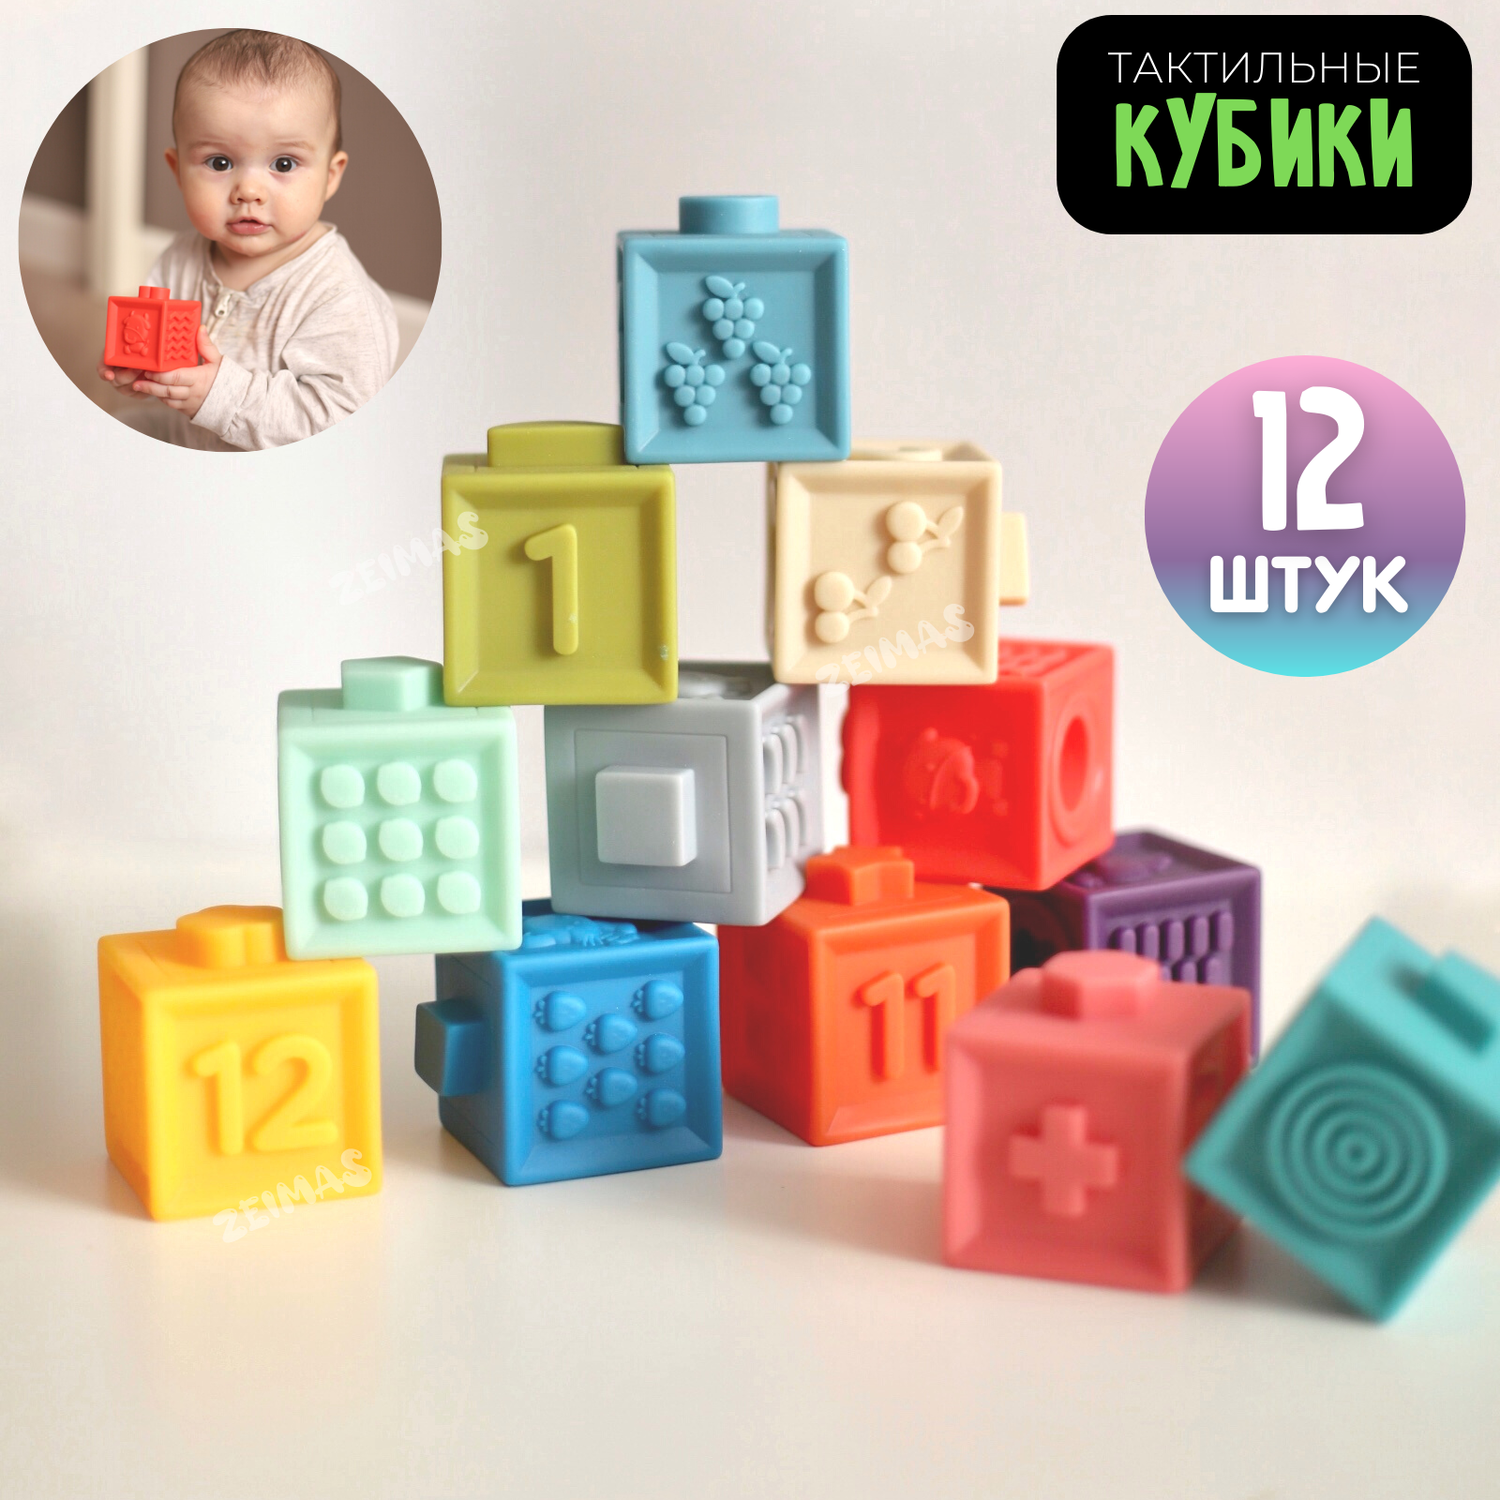 Кубики развивающие с пазами Zeimas Basic набор 12 шт мягкие тактильные игрушки пирамидка детская - фото 1